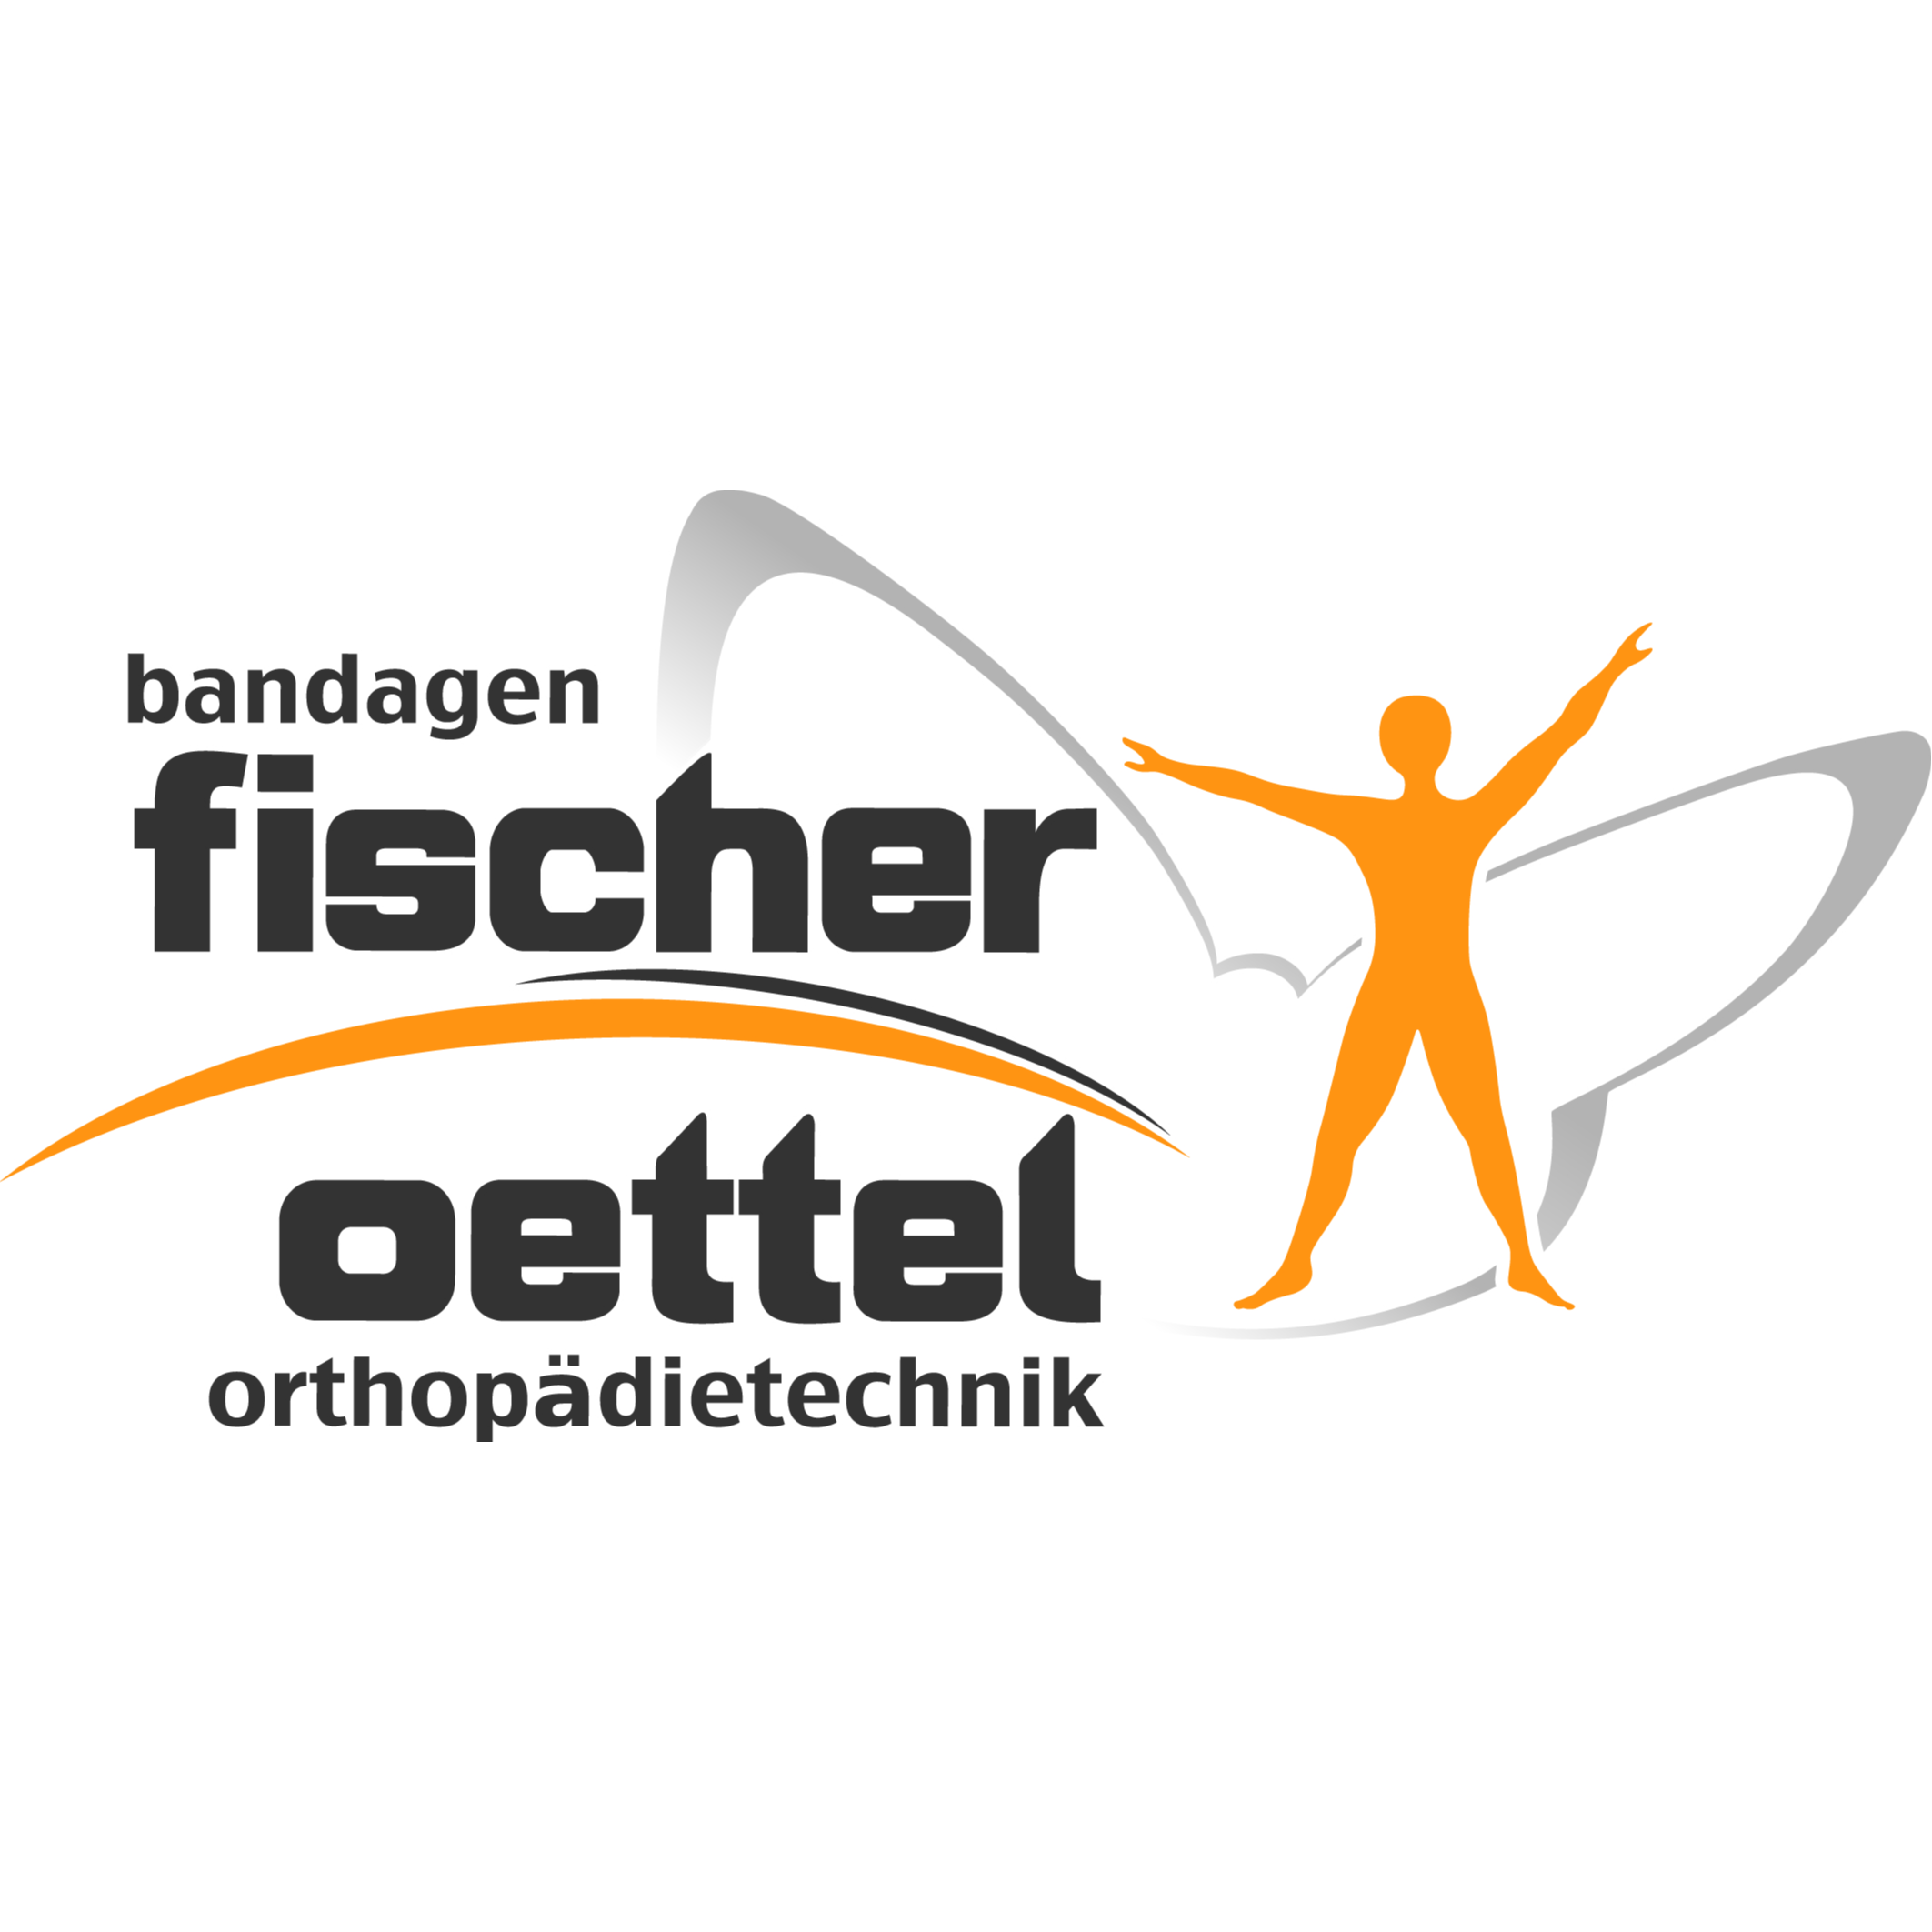 Bandagen Fischer Oettel Orthopädietechnik in Plauen - Logo